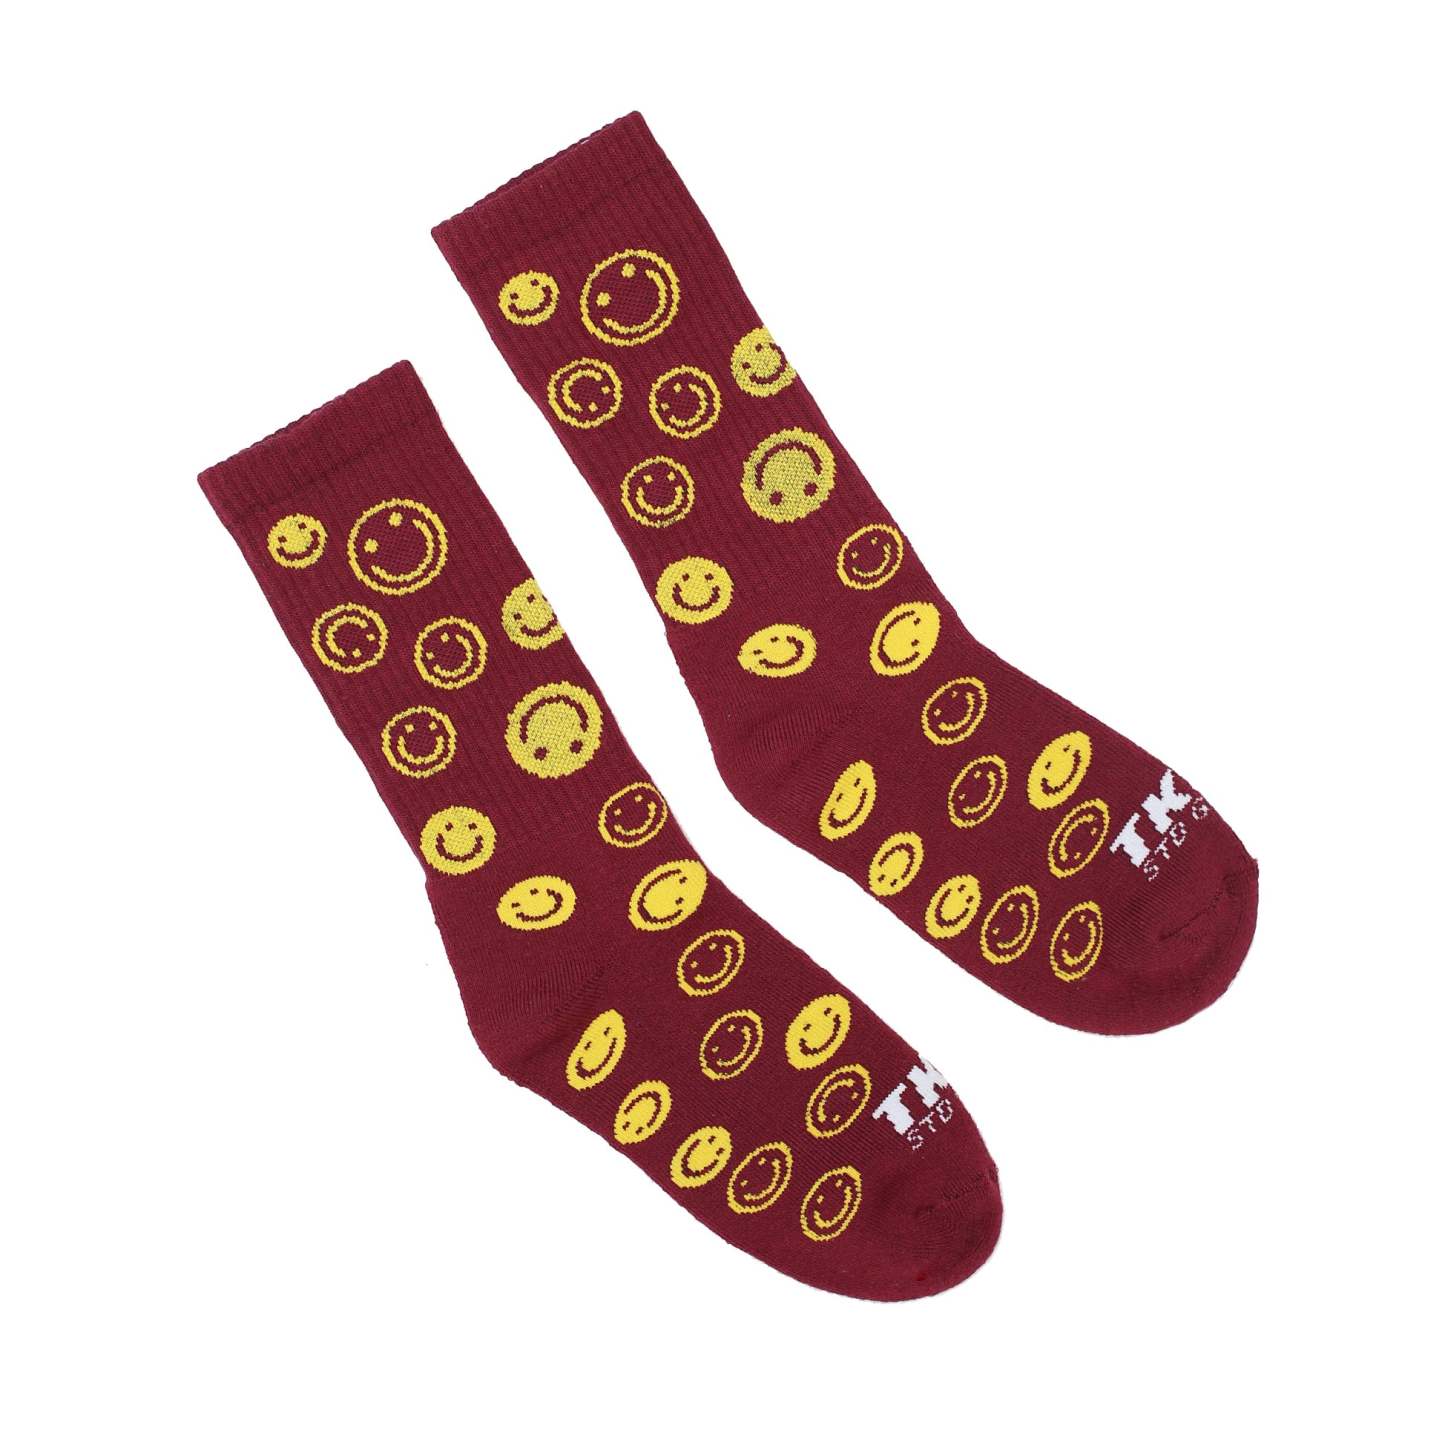 TKSB - Smiley Maroon Socks